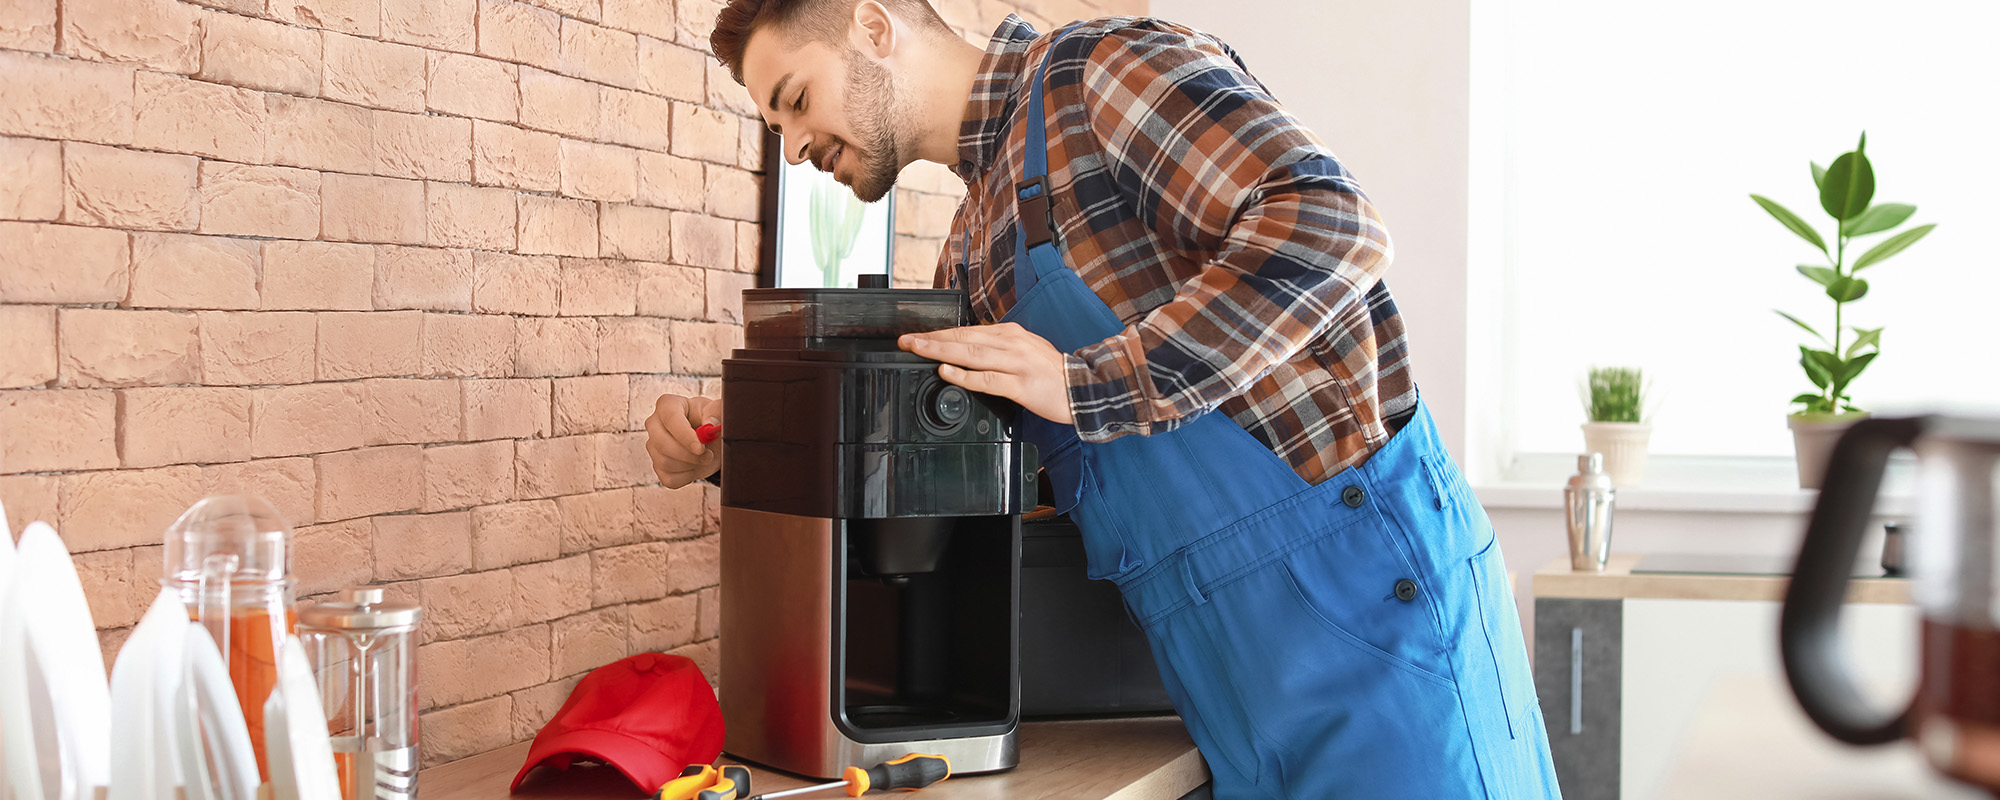 man repairing coffee machine in kitchen